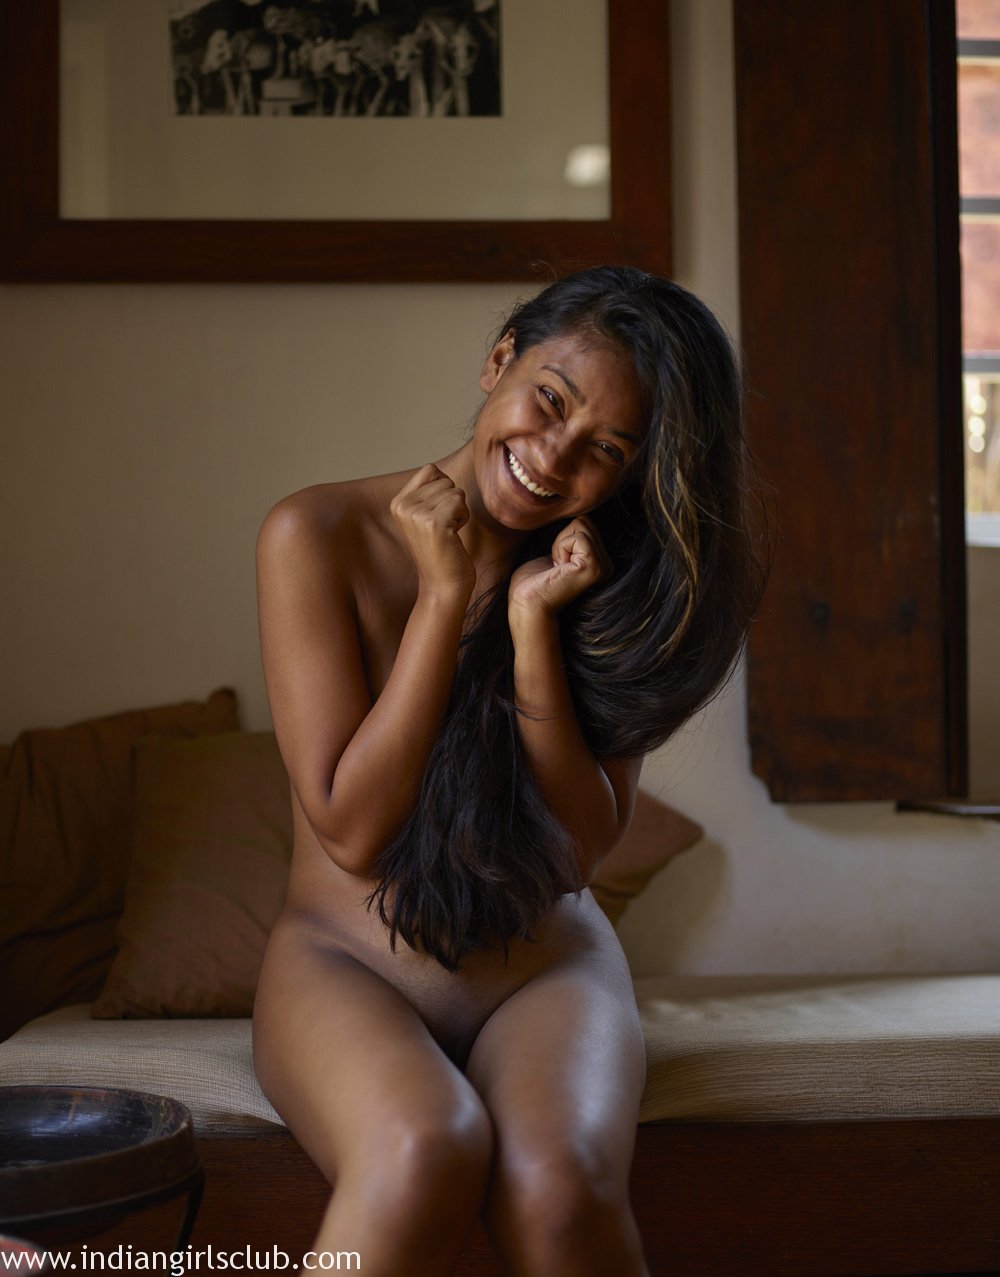 Indian Adult Nude Models - indian-porn-model-kalpana-mathur-xxx-nudes-14 - Indian Girls ...